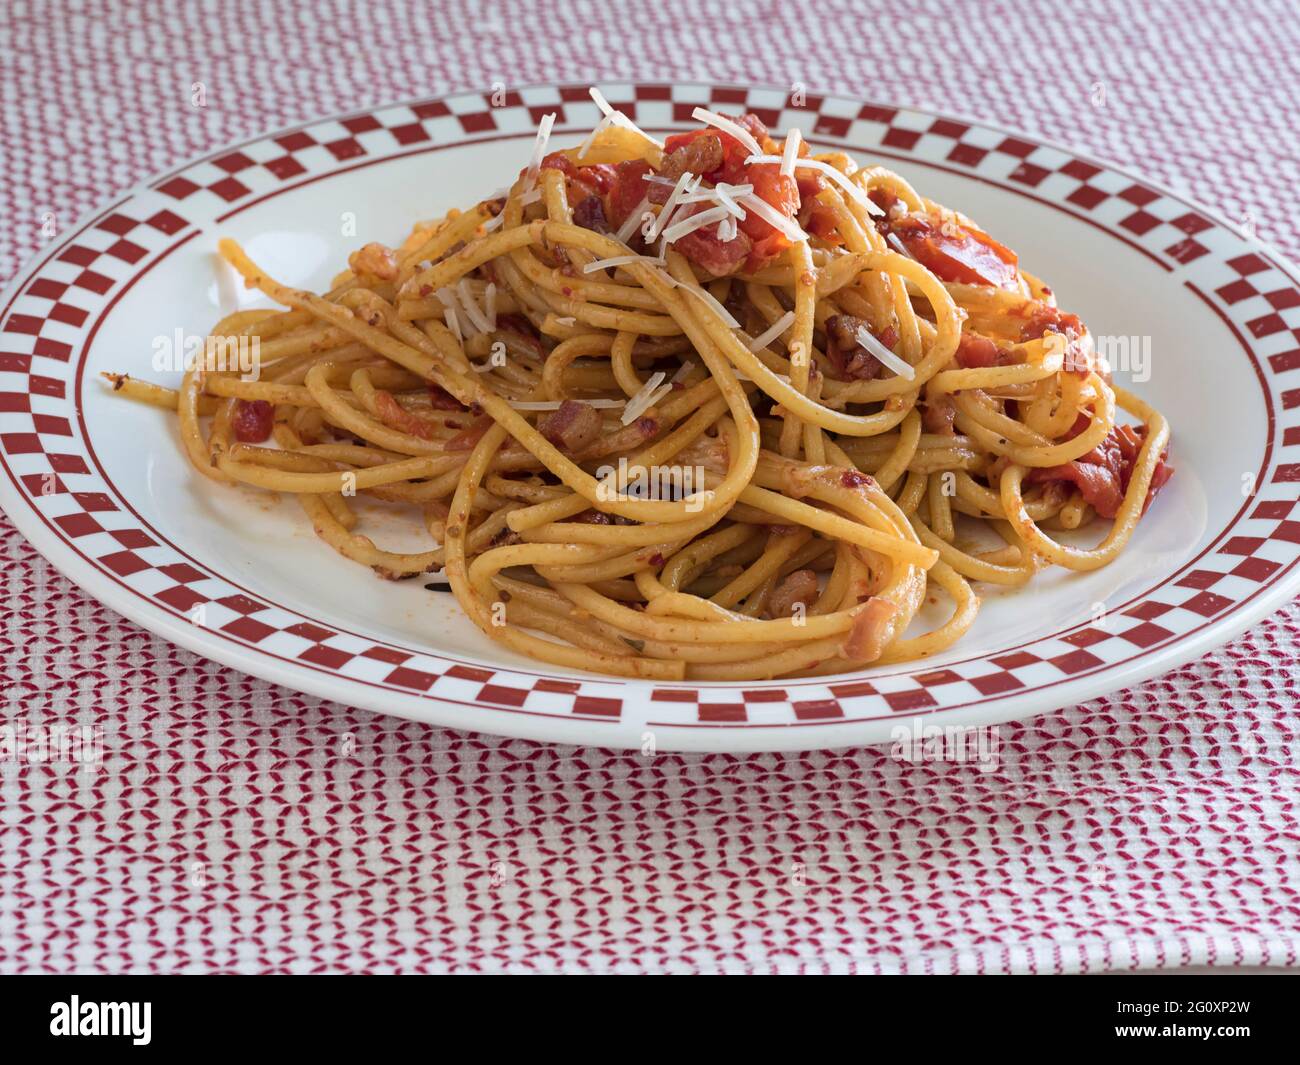 Un tas de Bucatini all'Amatriciana, un plat de pâtes italien à la pancetta et à la tomate, se trouve sur une assiette à carreaux, recouverte de parmesan Banque D'Images